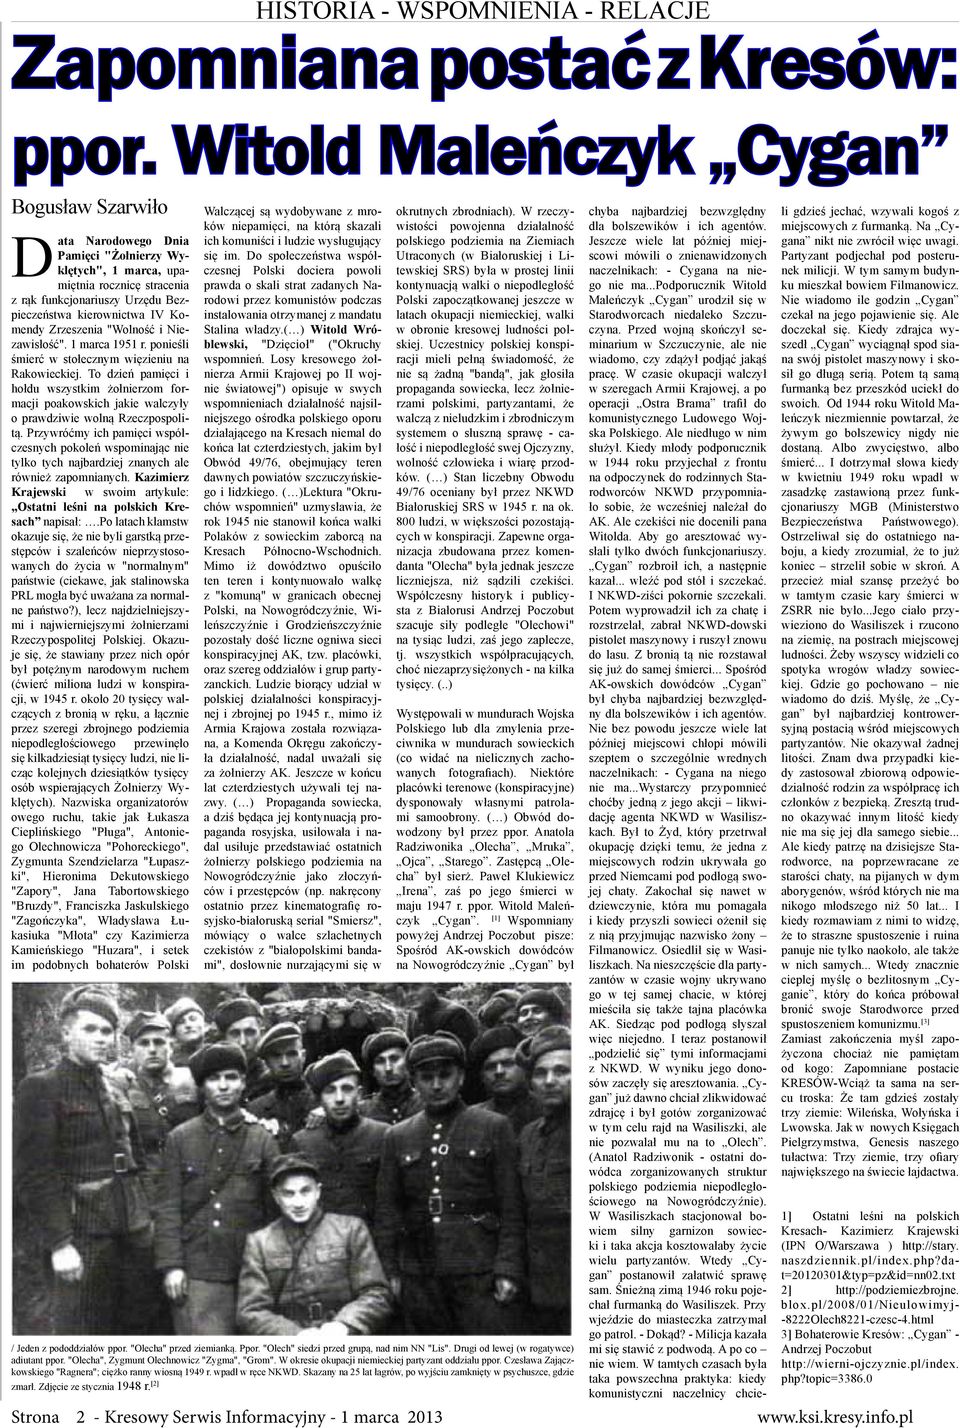 Zrzeszenia "Wolność i Niezawisłość". 1 marca 1951 r. ponieśli śmierć w stołecznym więzieniu na Rakowieckiej.